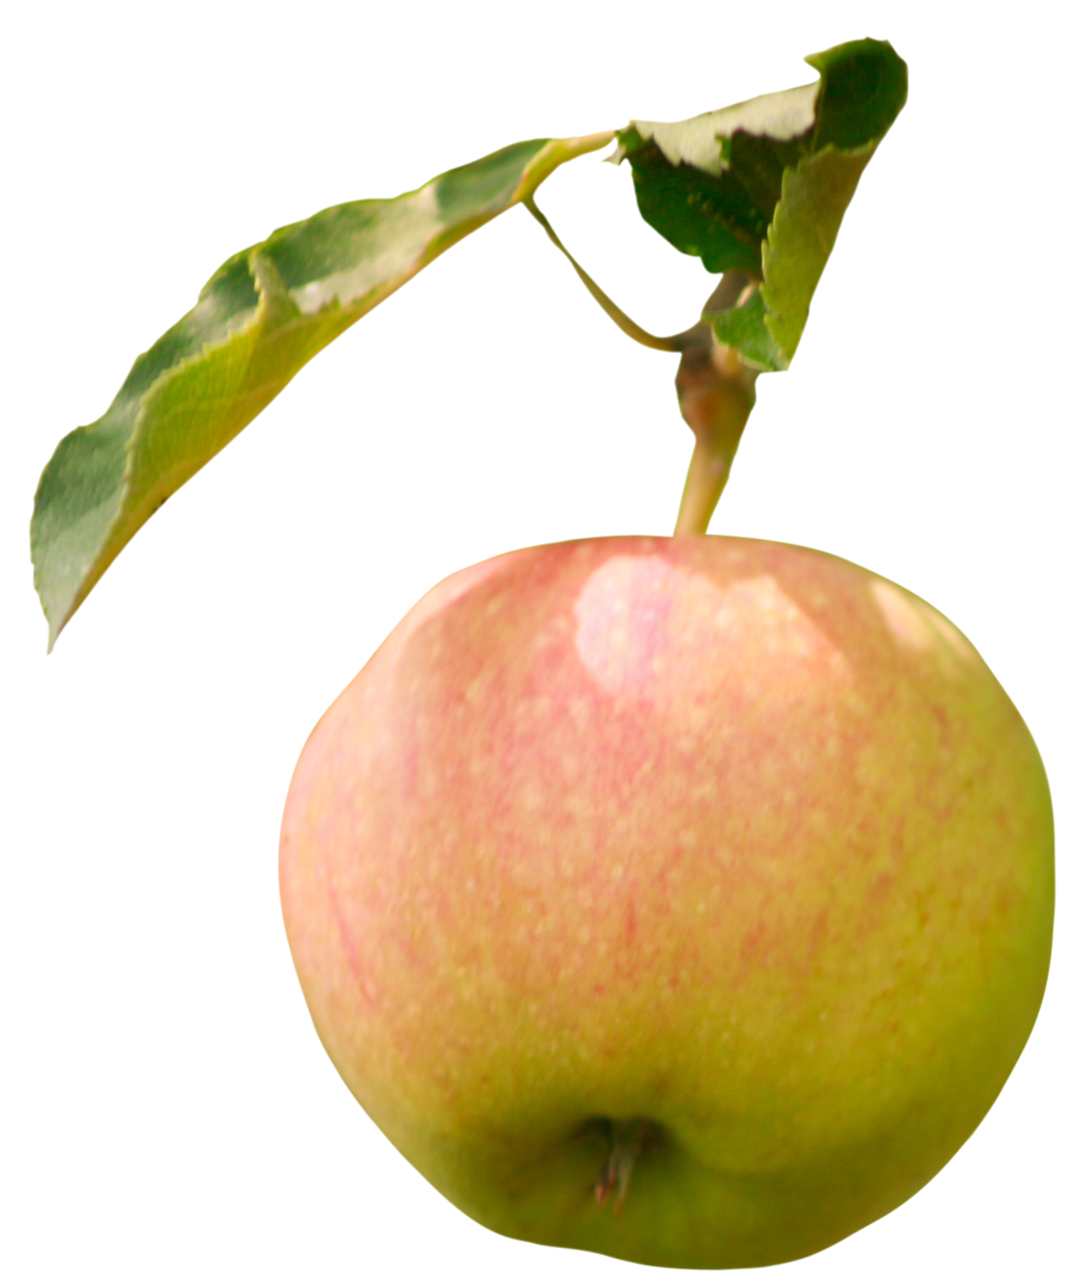 apple with leaf, apple with leaf png, apple with leaf png image, apple with leaf transparent png image, apple with leaf png full hd images download